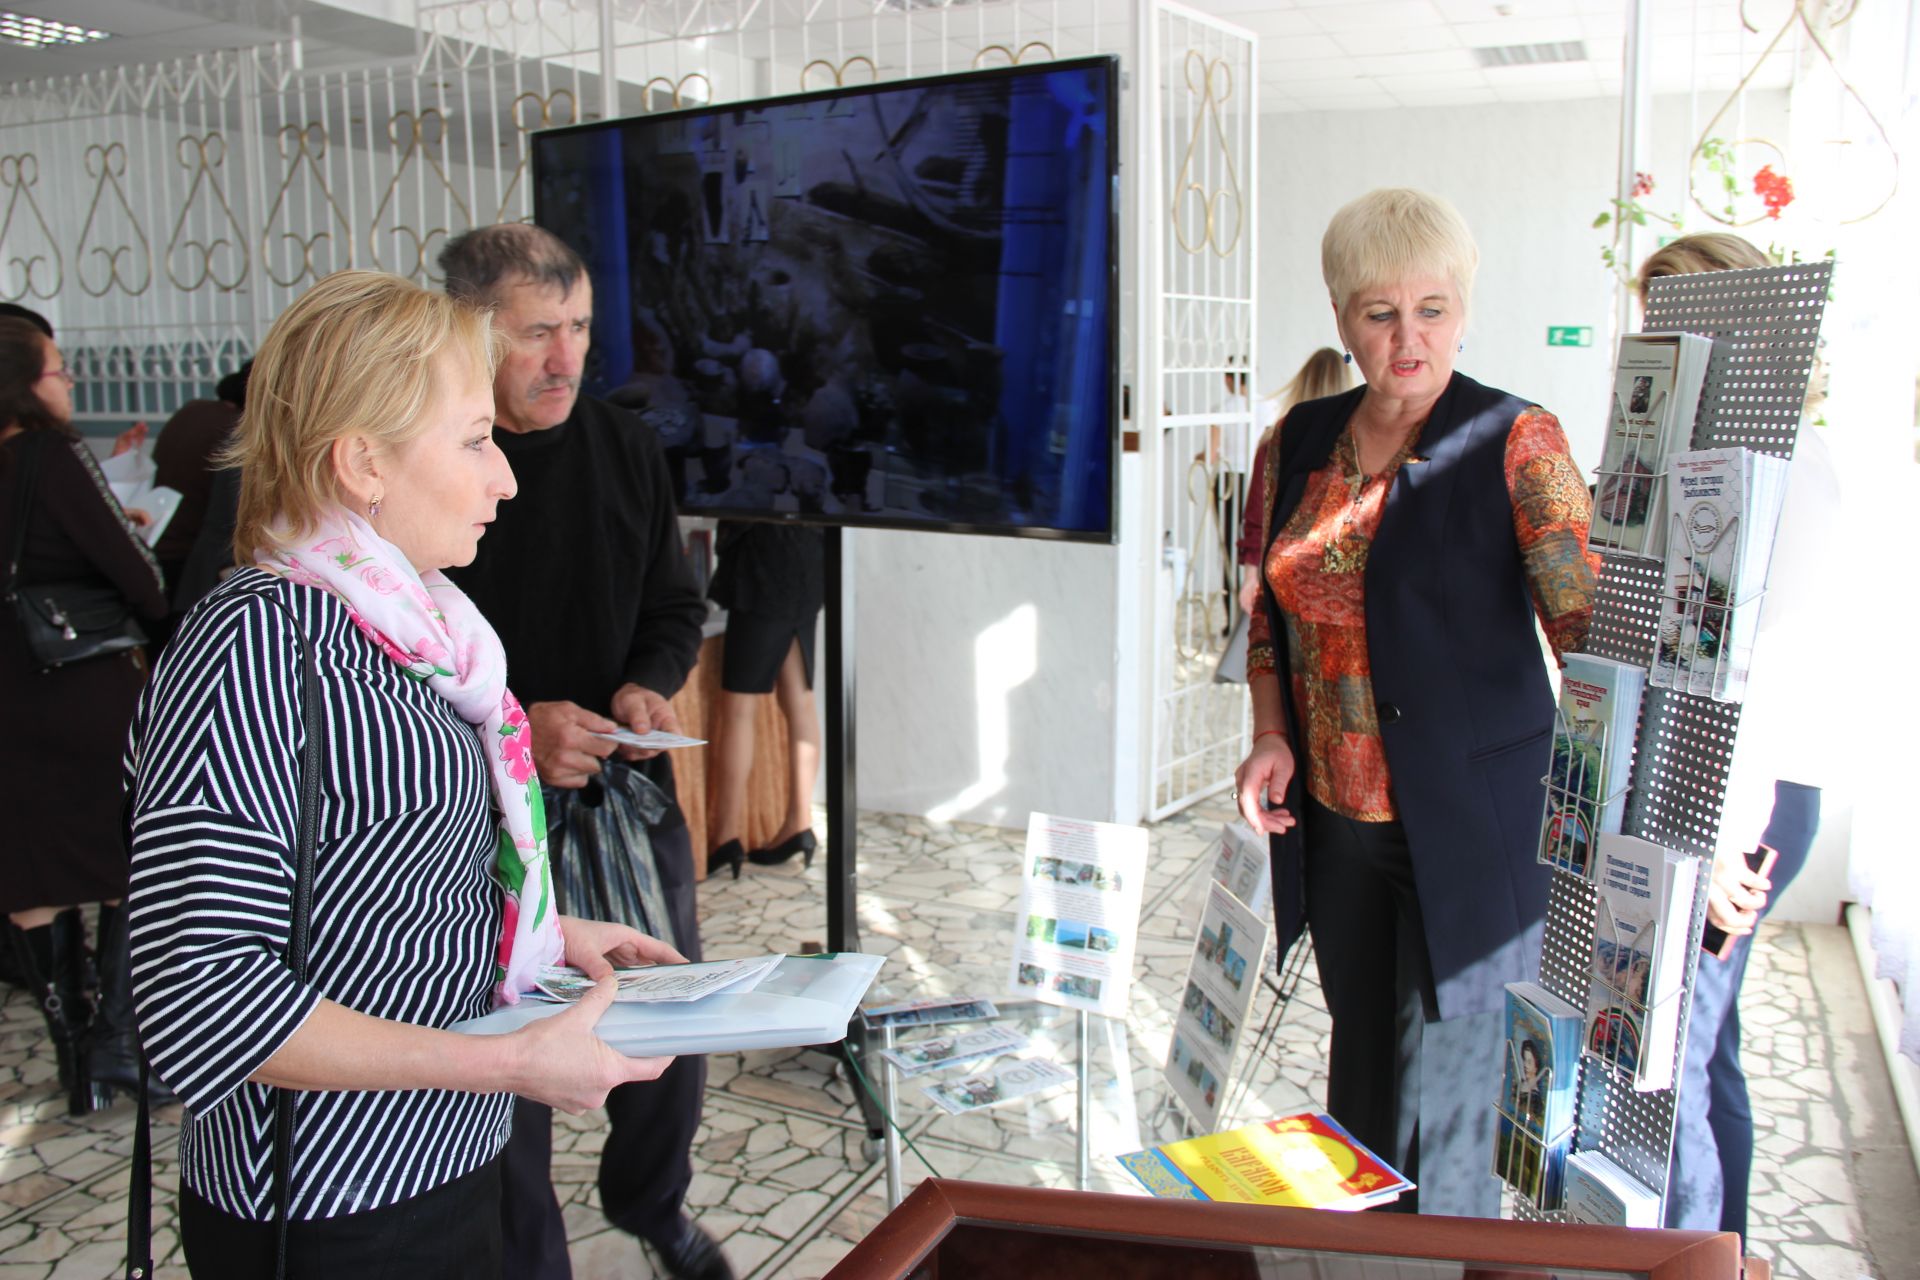 В Тетюшах прошел  республиканский научно-практический семинар «Актуальные вопросы деятельности музеев Татарстана»